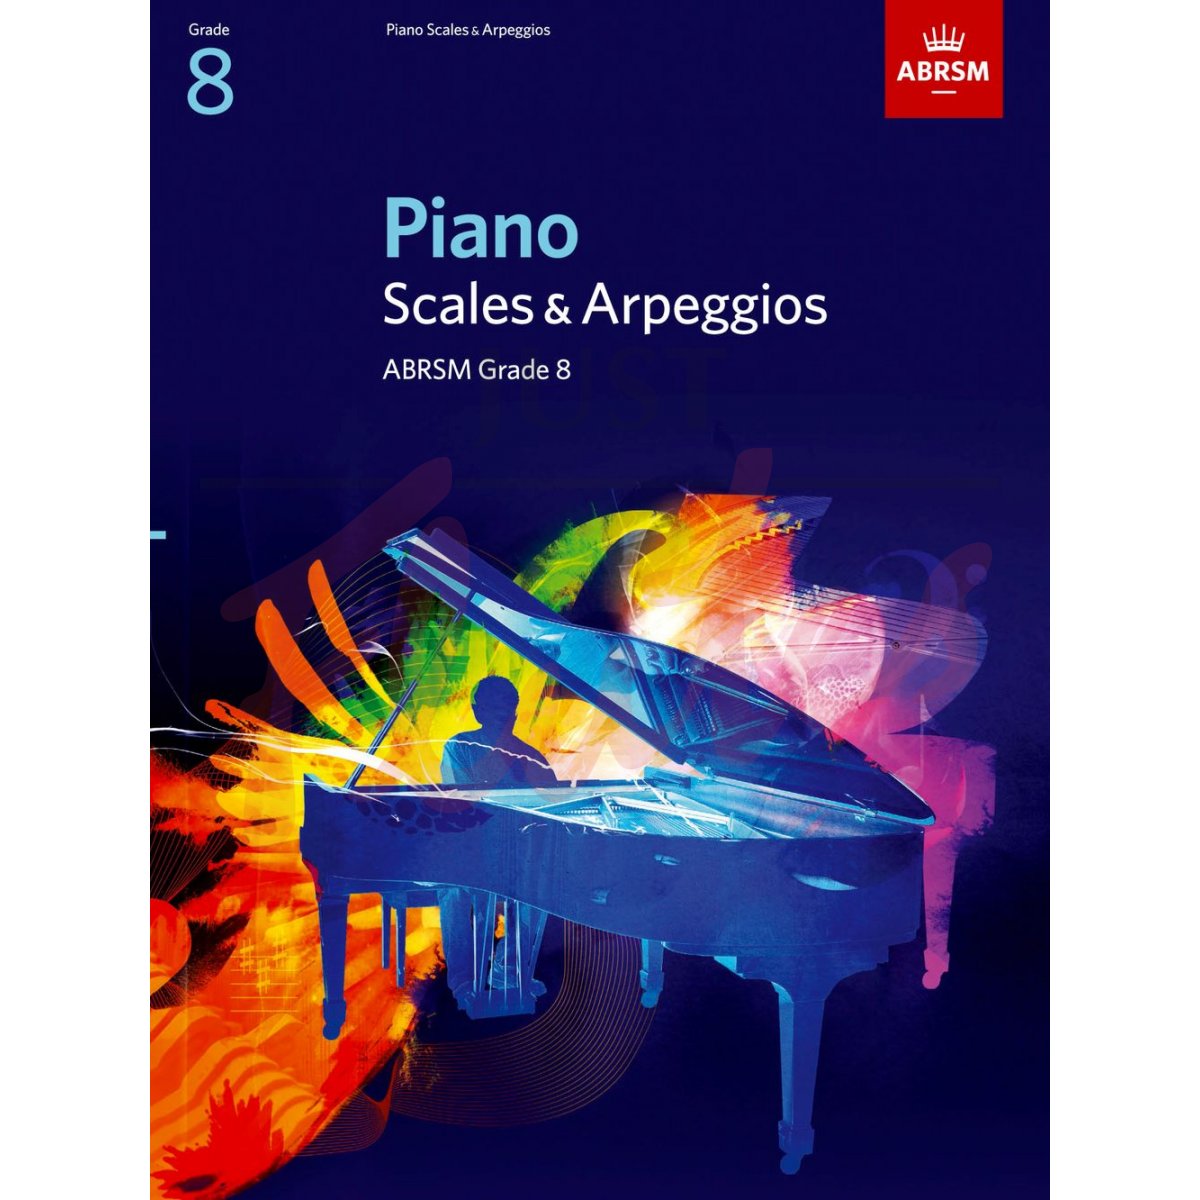 Piano Scales and Arpeggios Grade 8 (2009 to 2019)